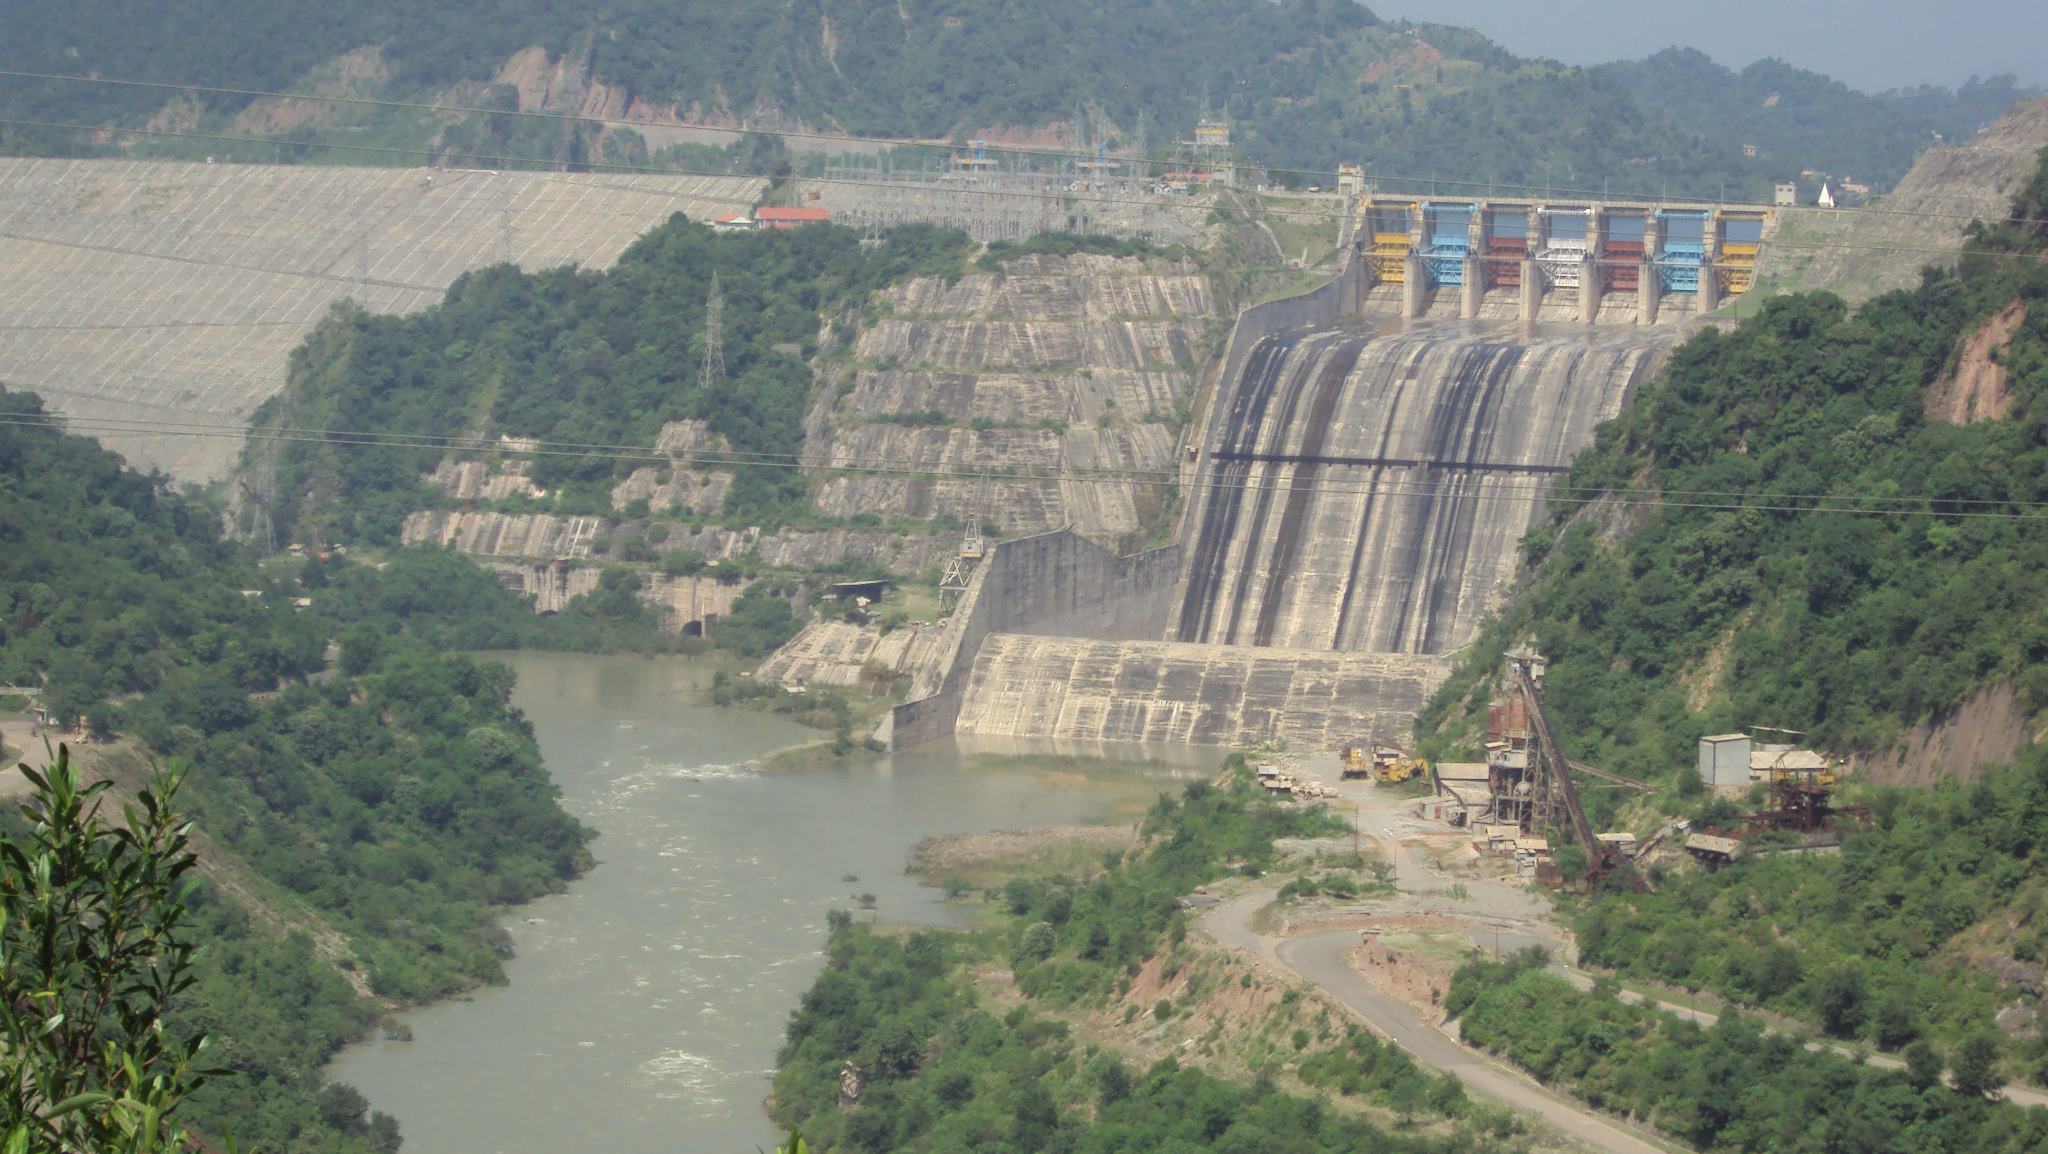 The Ranjit Sagar Dam Basohli